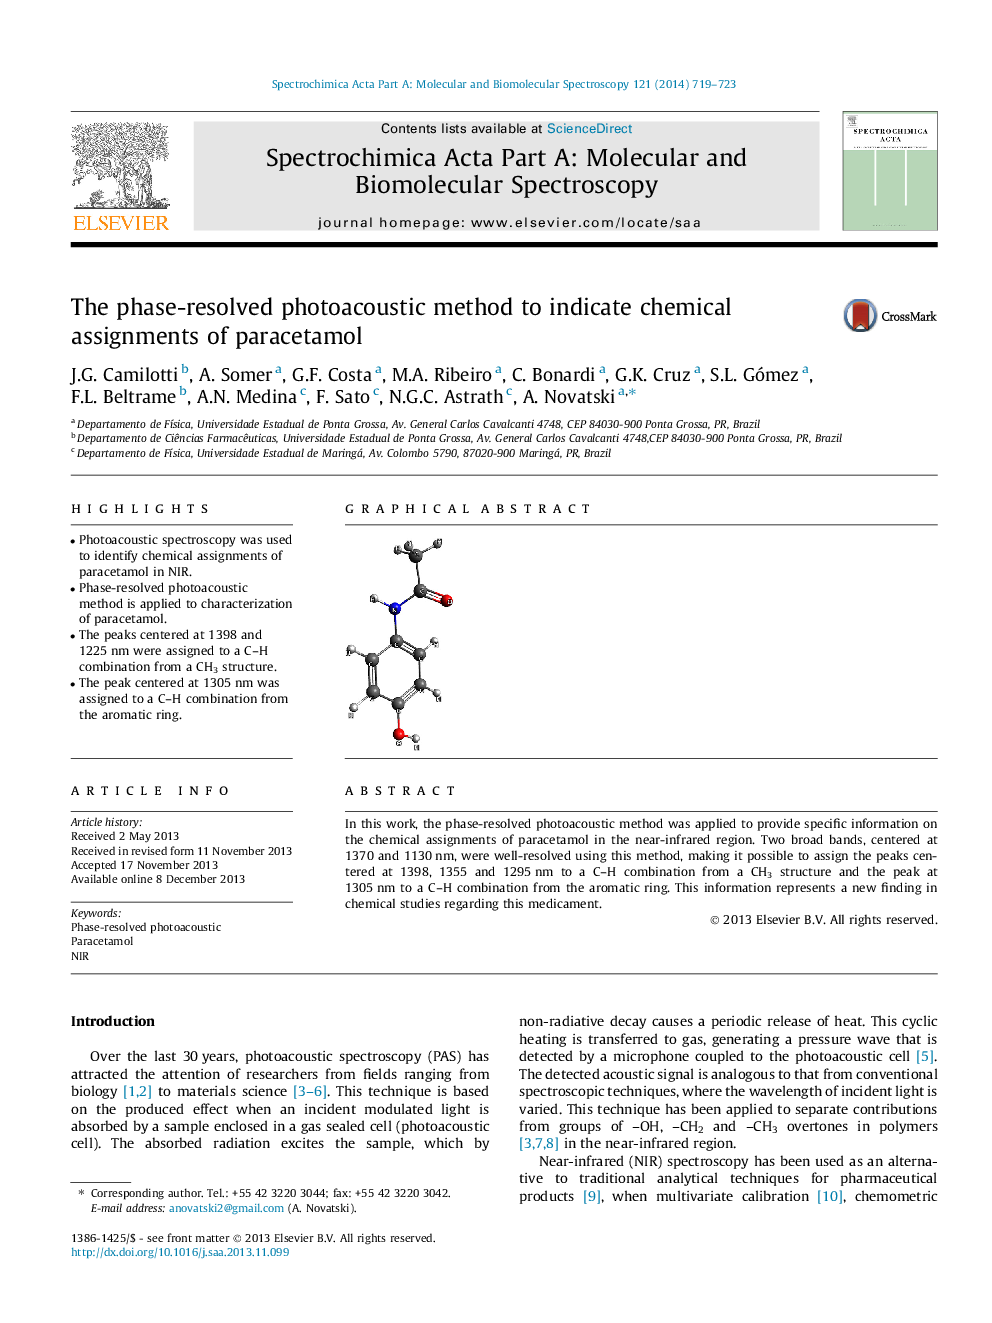 روش فتوشاپی فاز حل شده برای تعیین پارامترهای شیمیایی پاراستامول 